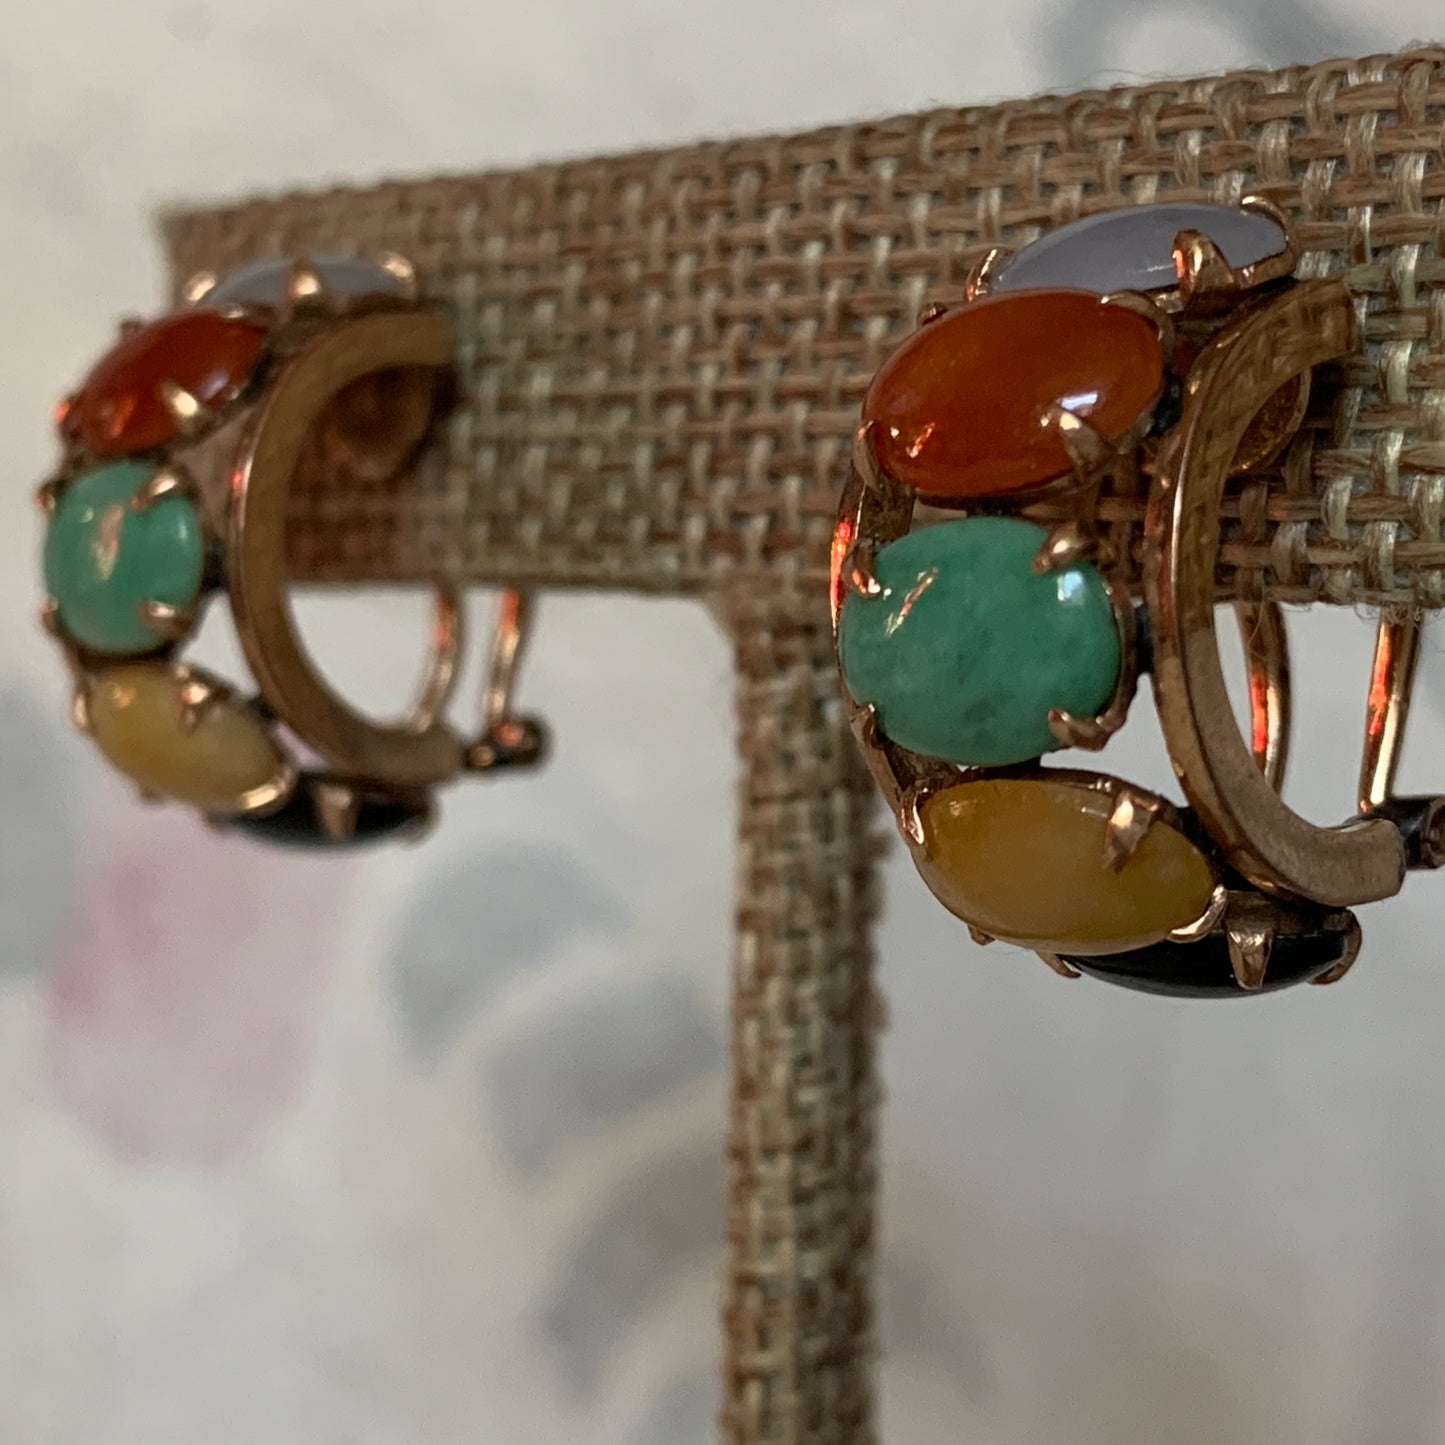 A pair of multicolored jade earrings